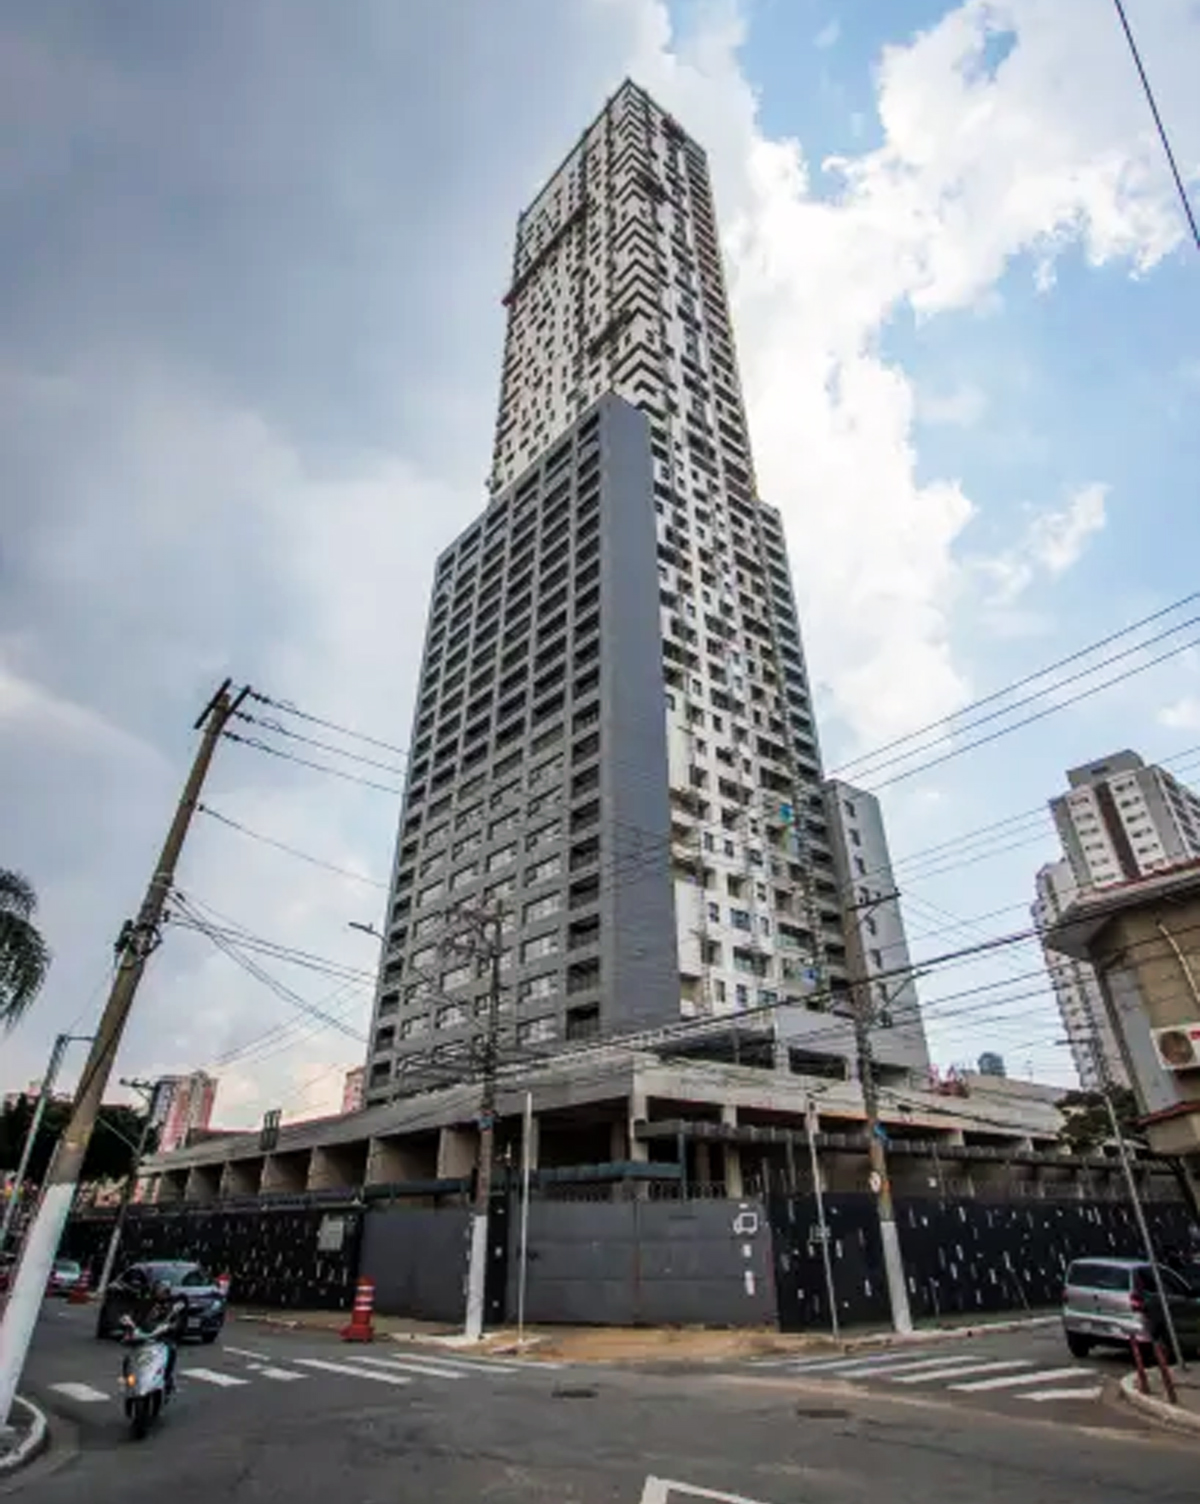 Com 46 andares, futuro prédio mais alto de São Paulo será entregue em junho. Veja fotos